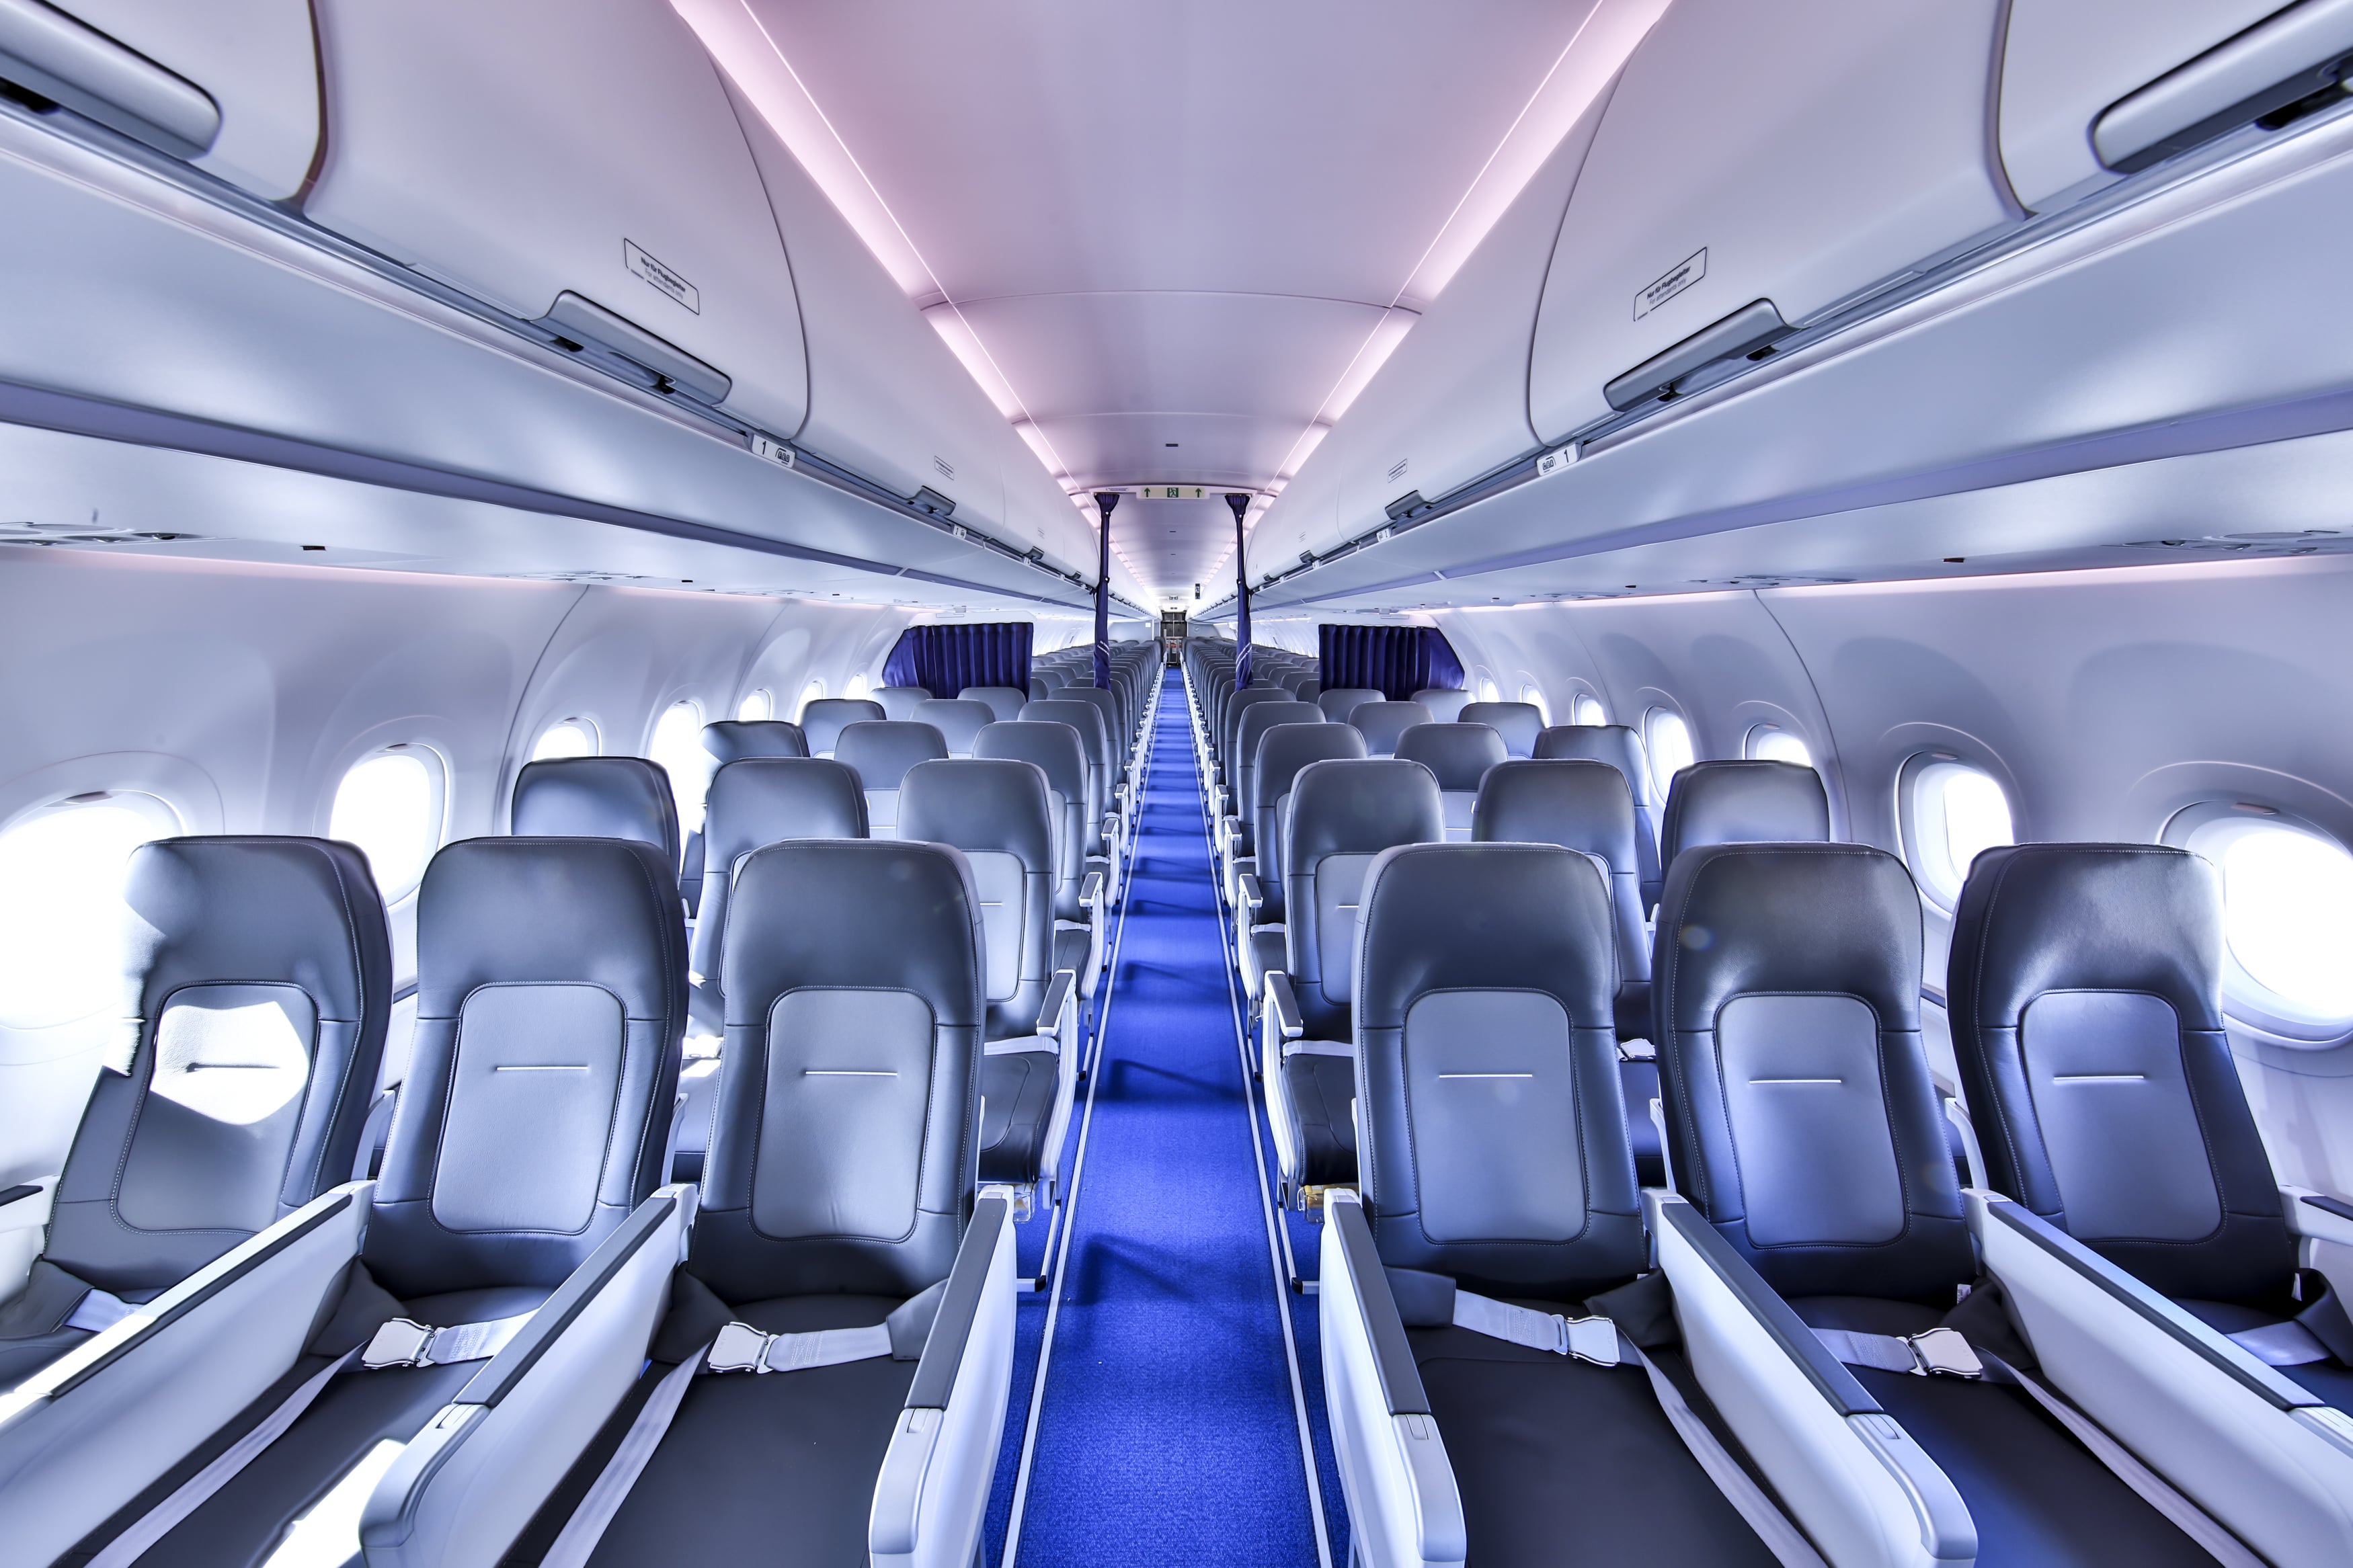 Voyages : Lufthansa propose une nouveauté d'Airbus, la luxueuse cabine monocouloir  A0502328-86e4-409c-b043-b8ad4a3c5801